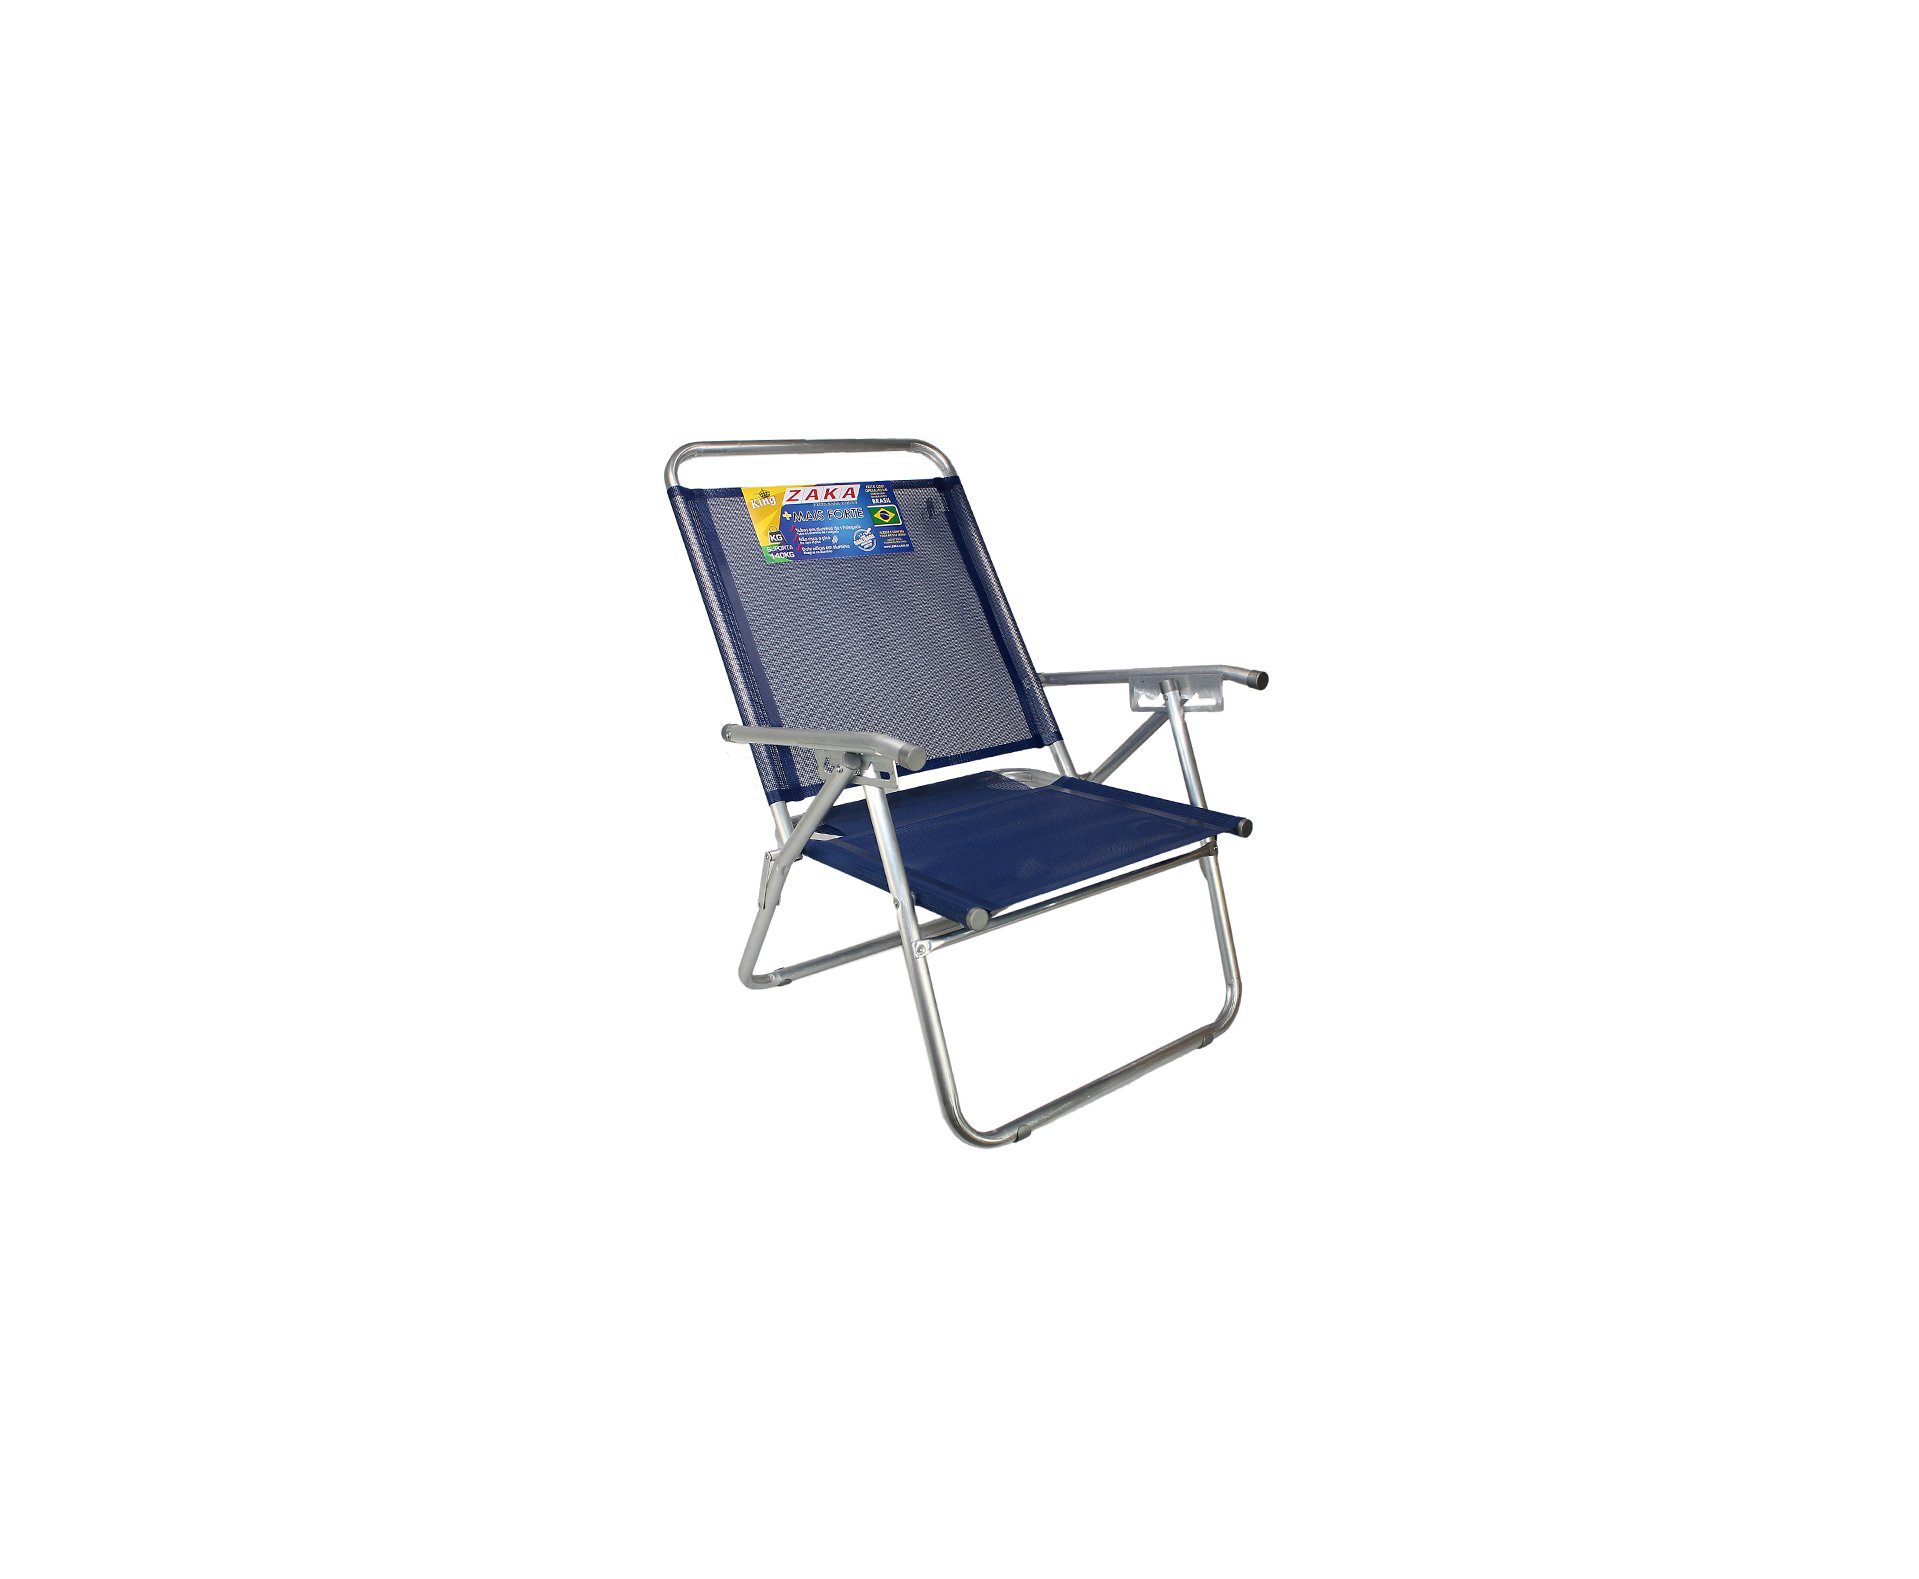 Cadeira De Praia Em Aluminio Zaka King Reclinável Marinho Capacidade 140kg